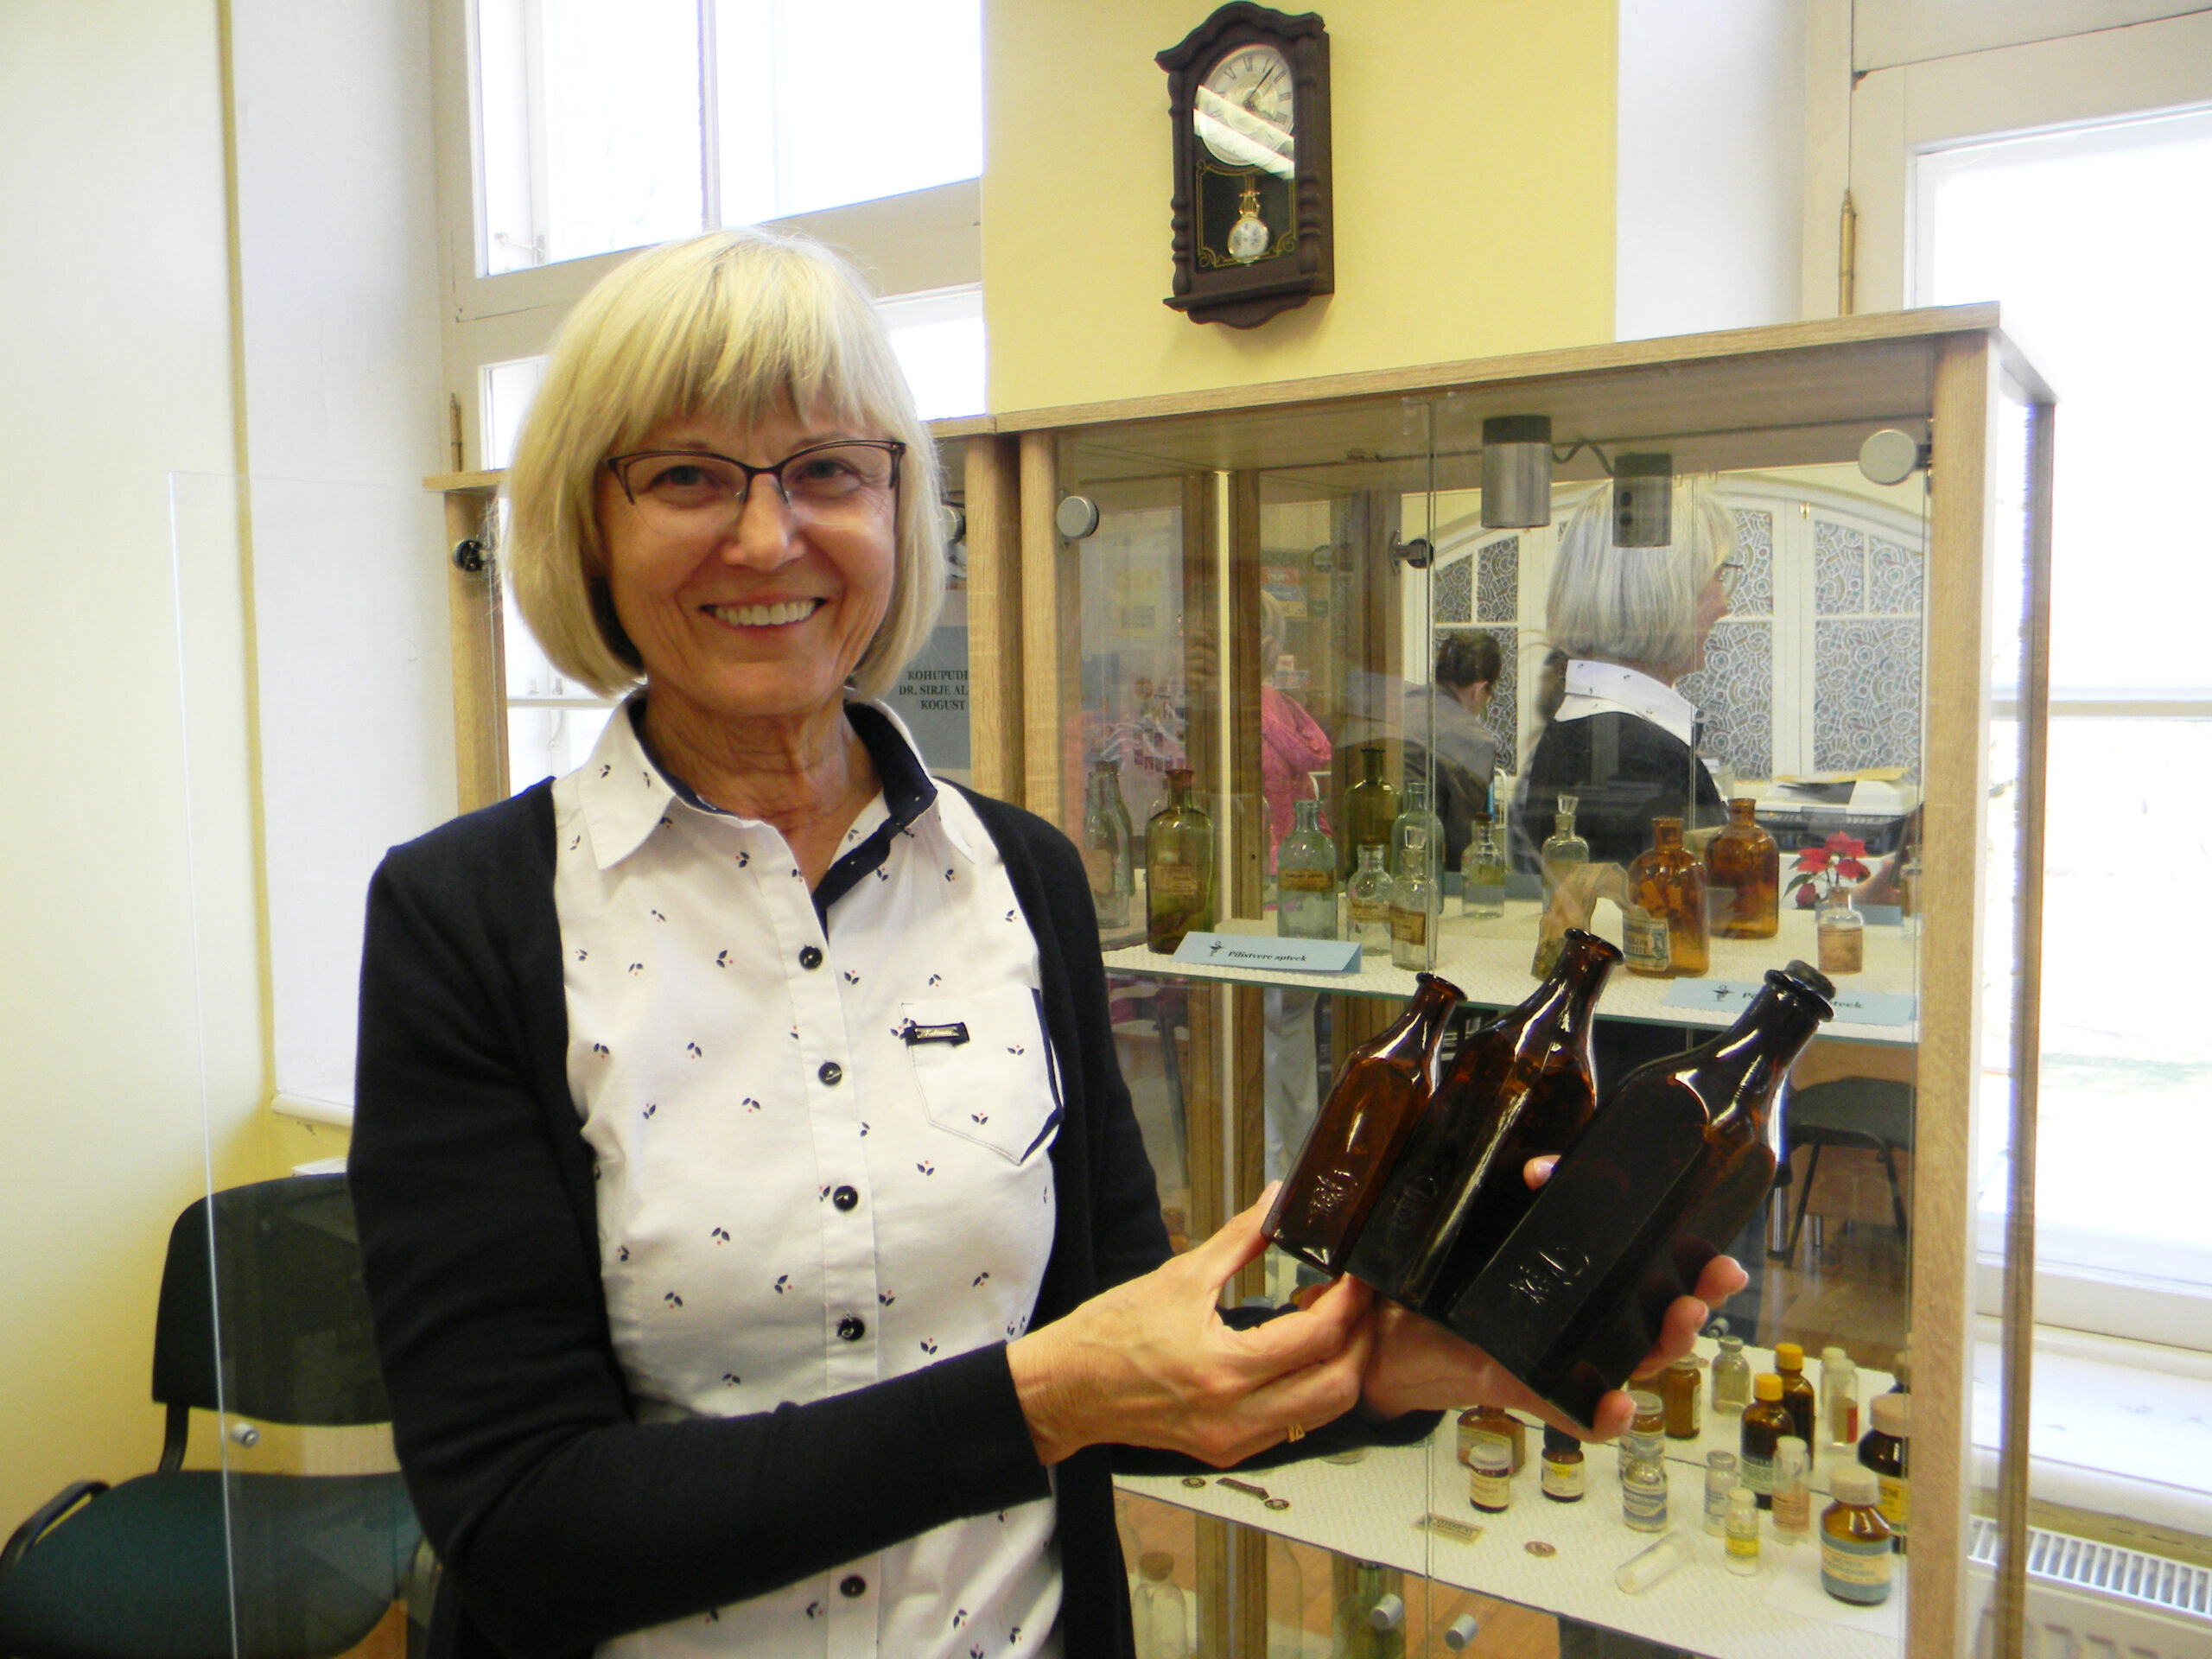 Dr Sirje Alusalu näitab Lorupi klaasivabrikus toodetud rohupudeleid, mida ehib mao ja karika märk. Foto Helis Rosin.